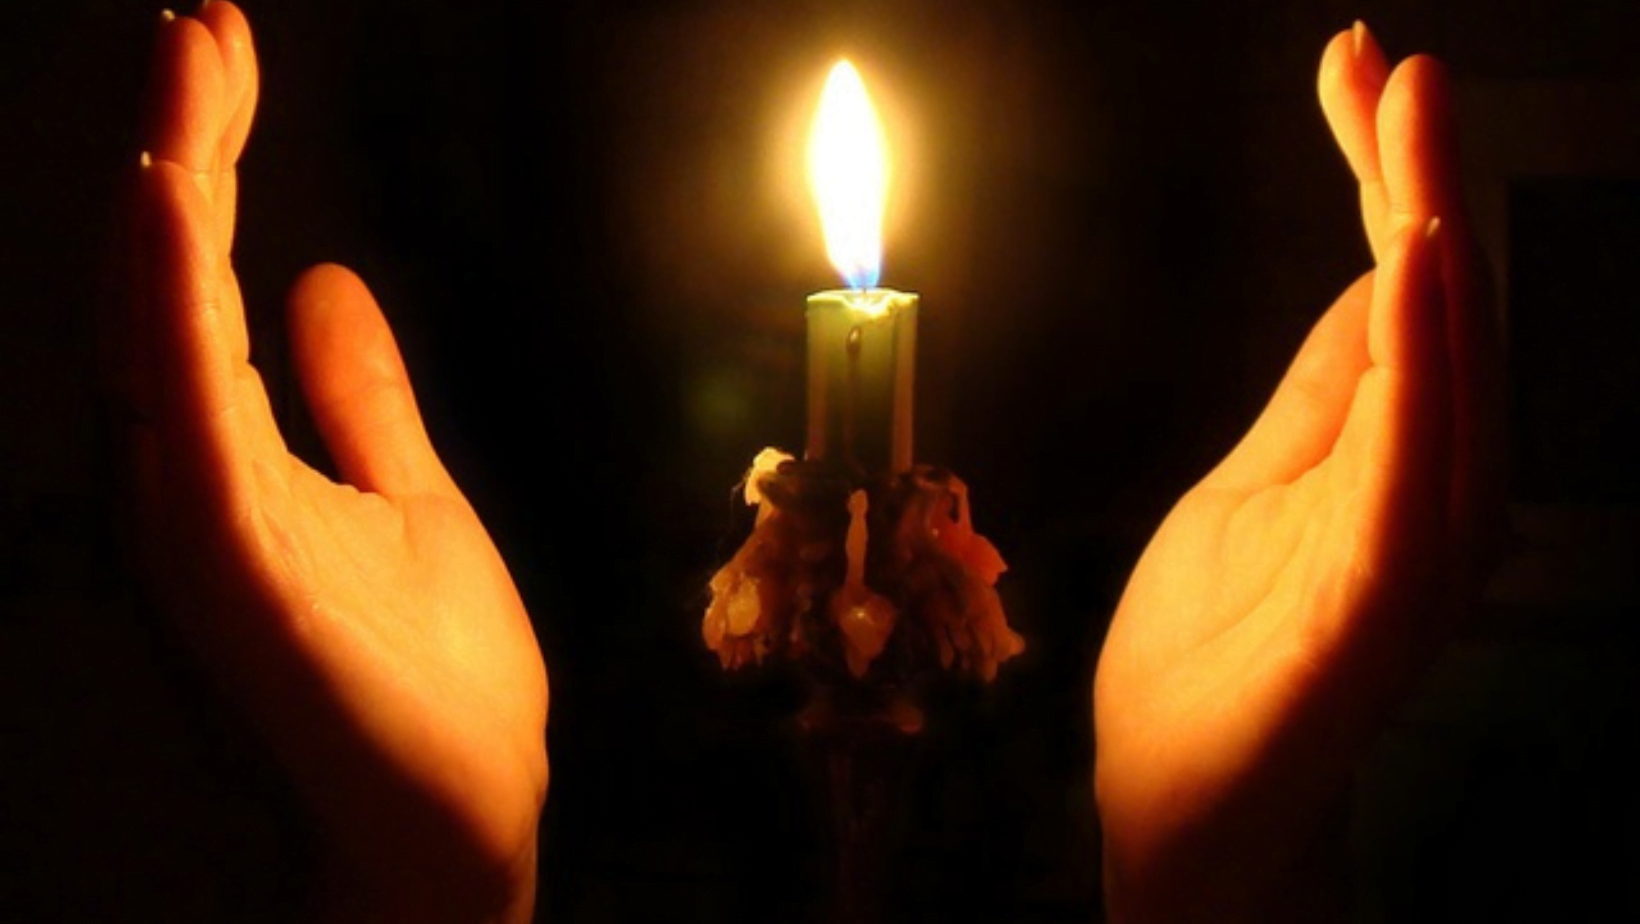 Песни за семью свечу зажгу. Свеча в руках. Вечная память. Помним скорбим. Свеча Мольба.